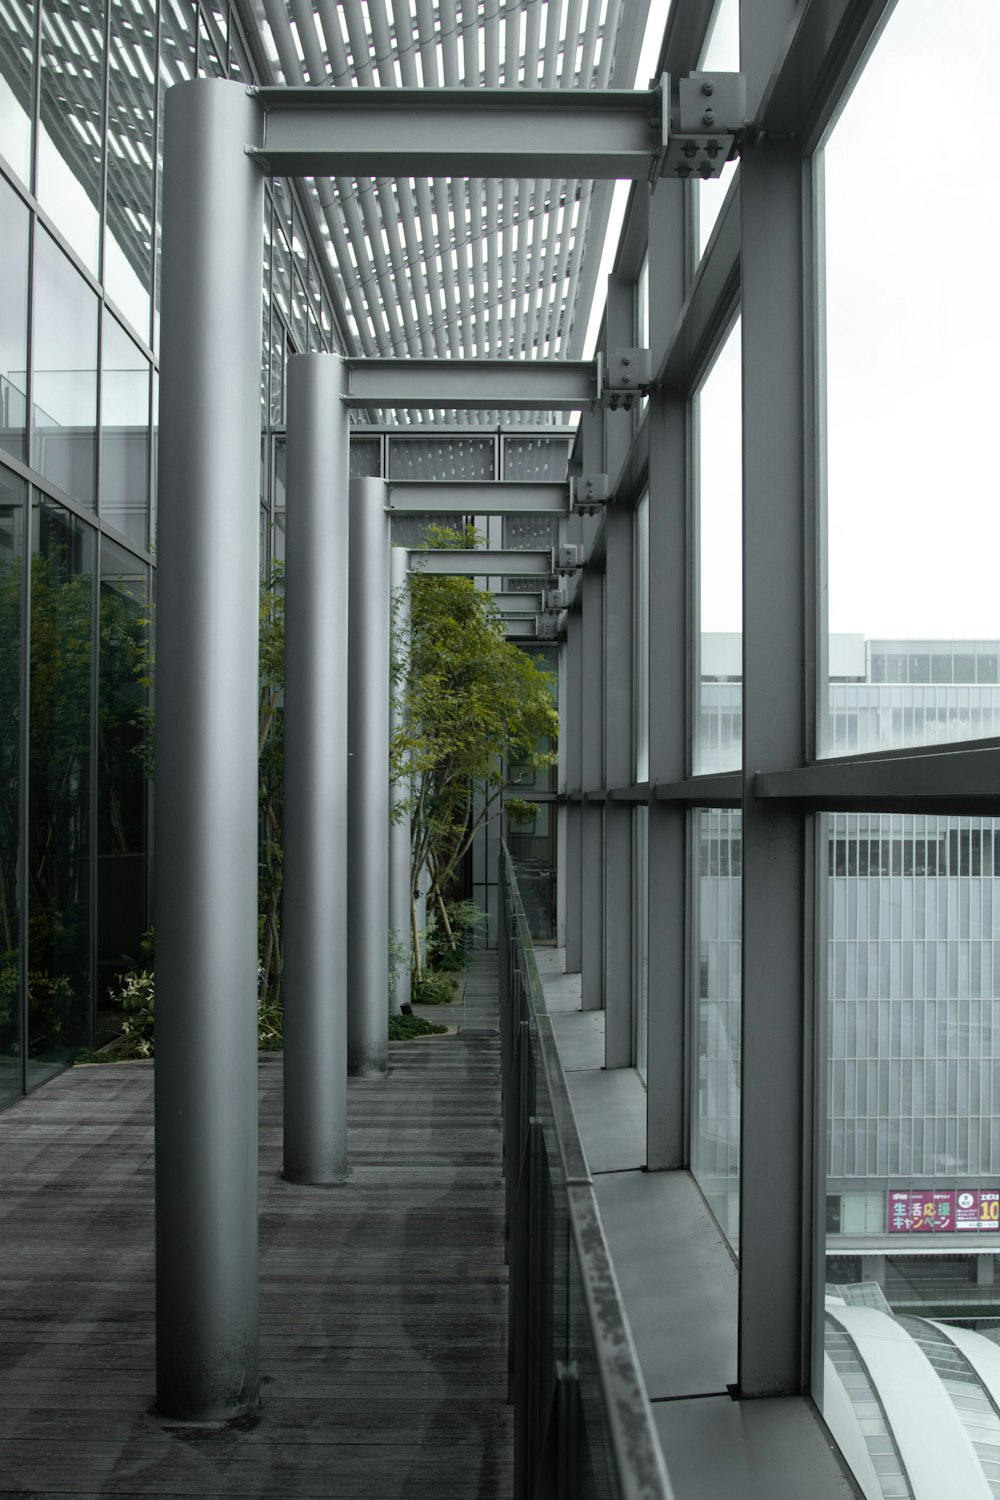 a walkway between buildings